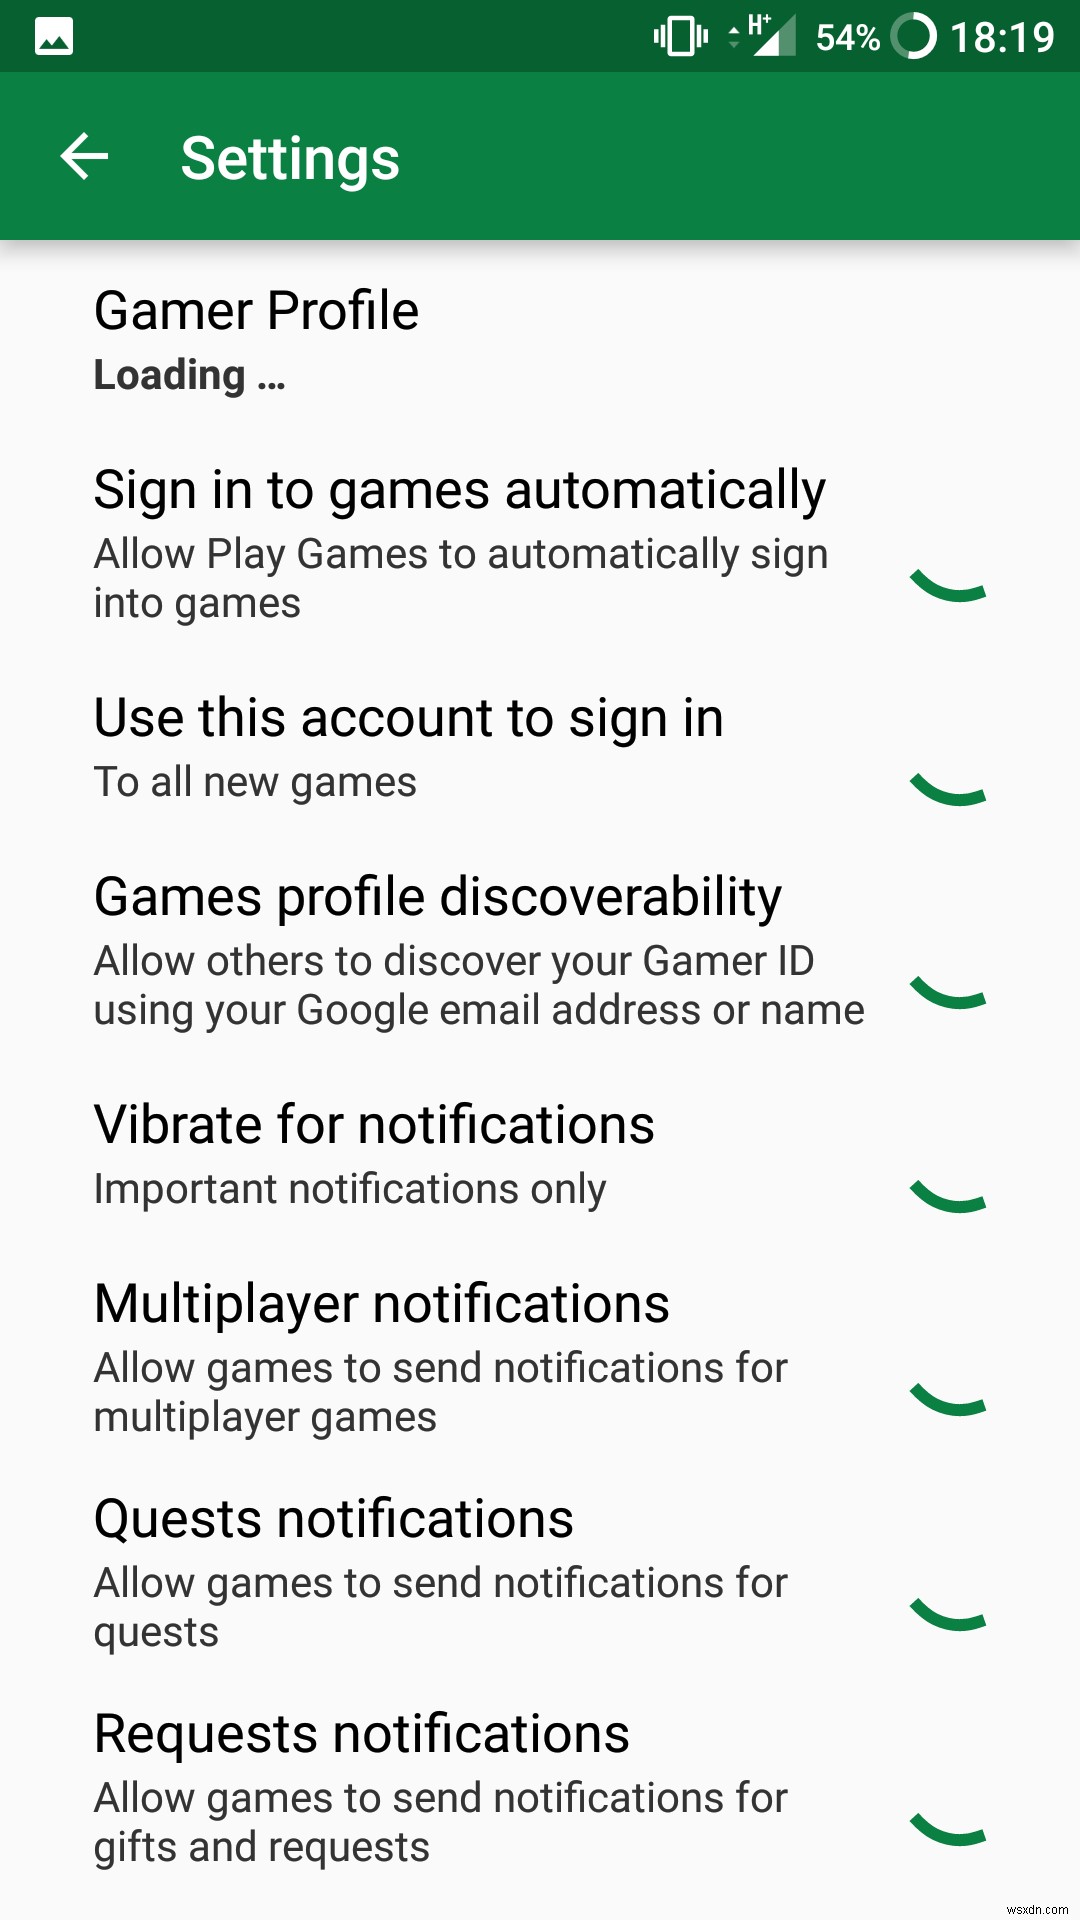 วิธีแก้ไขโปรไฟล์ Google Play Games ของคุณ 